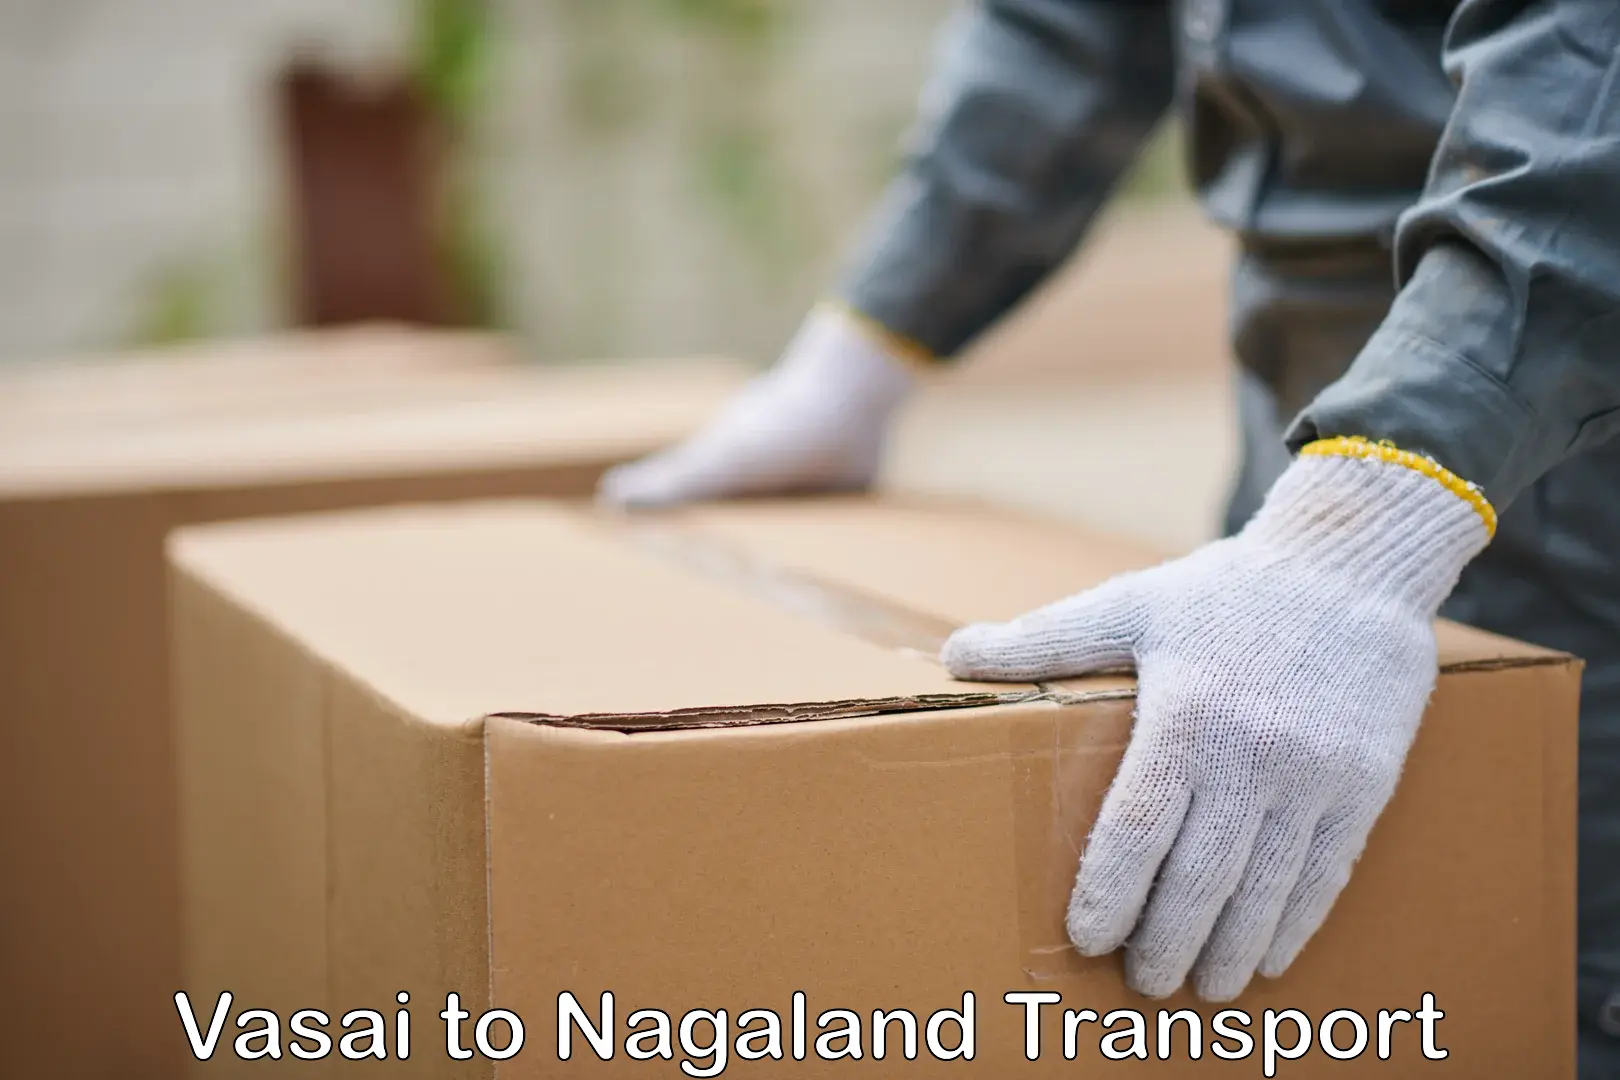 Furniture transport service Vasai to Nagaland